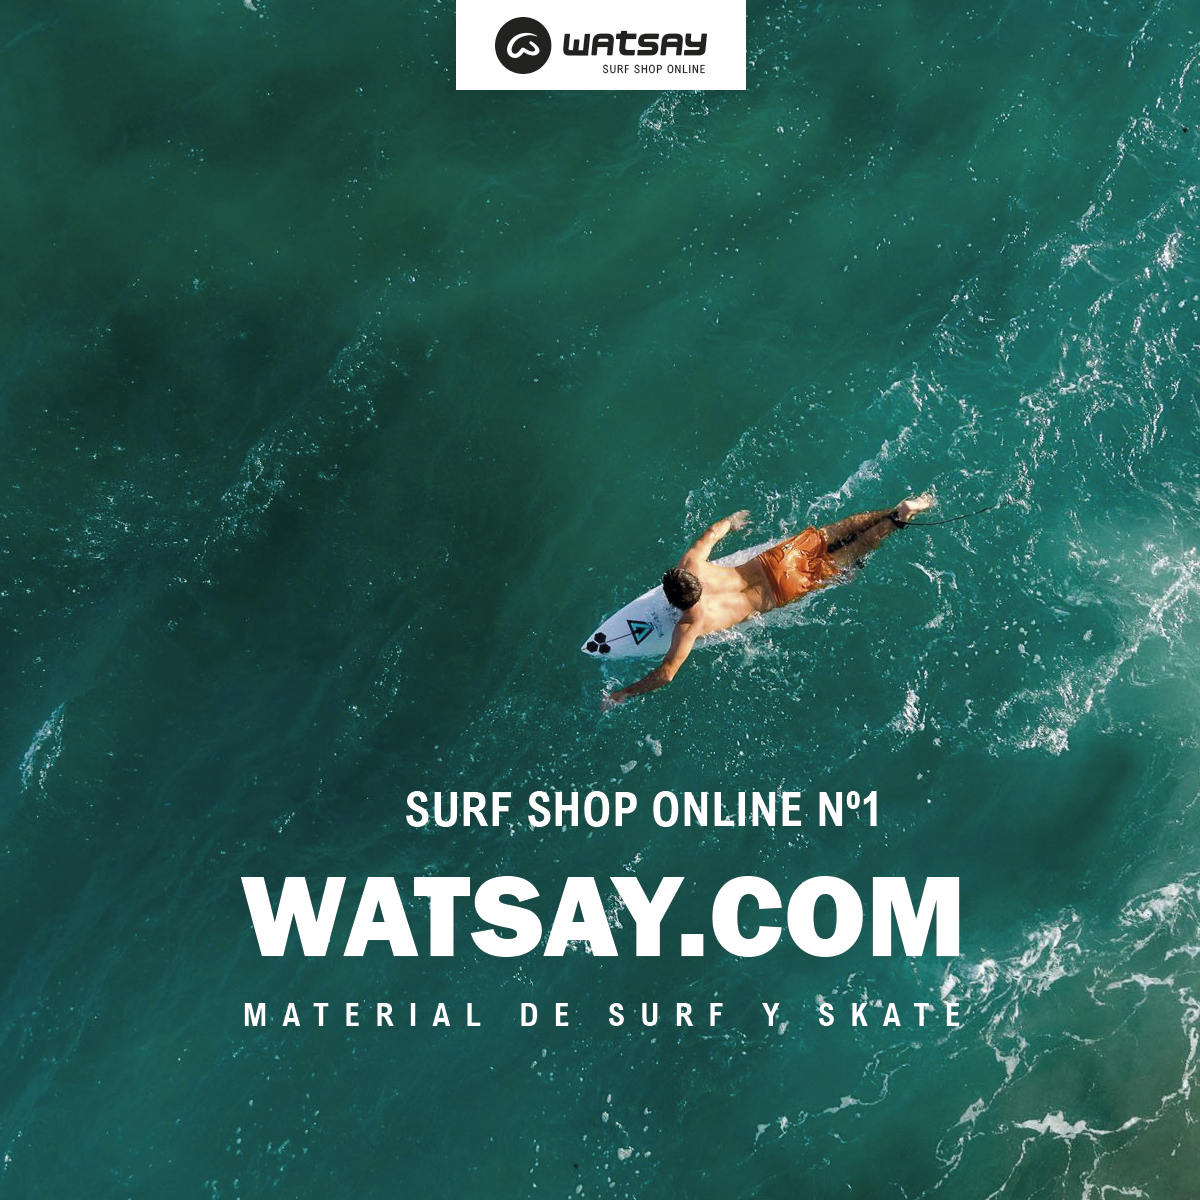 Watsay - Tienda de surf online